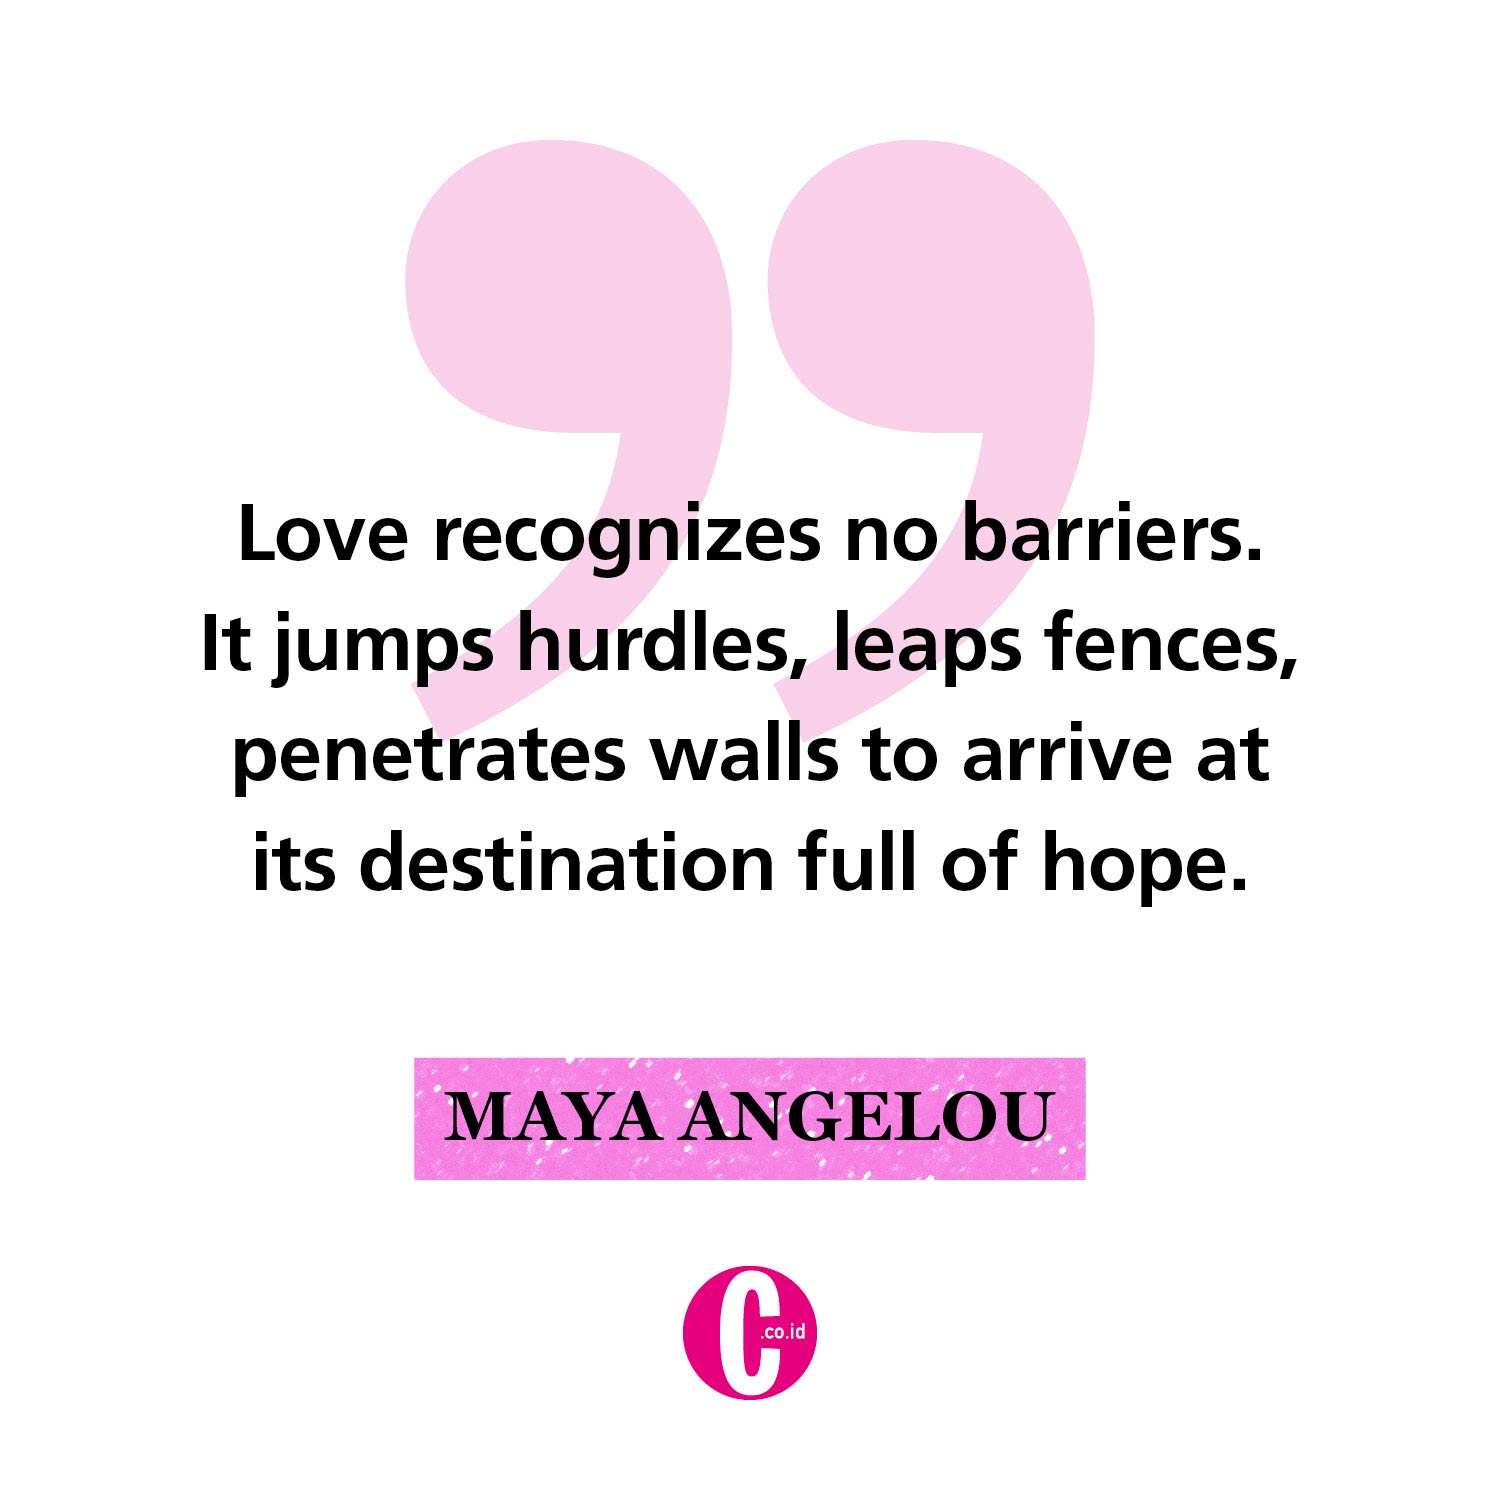 Kata-kata romantis dari Maya Angelou